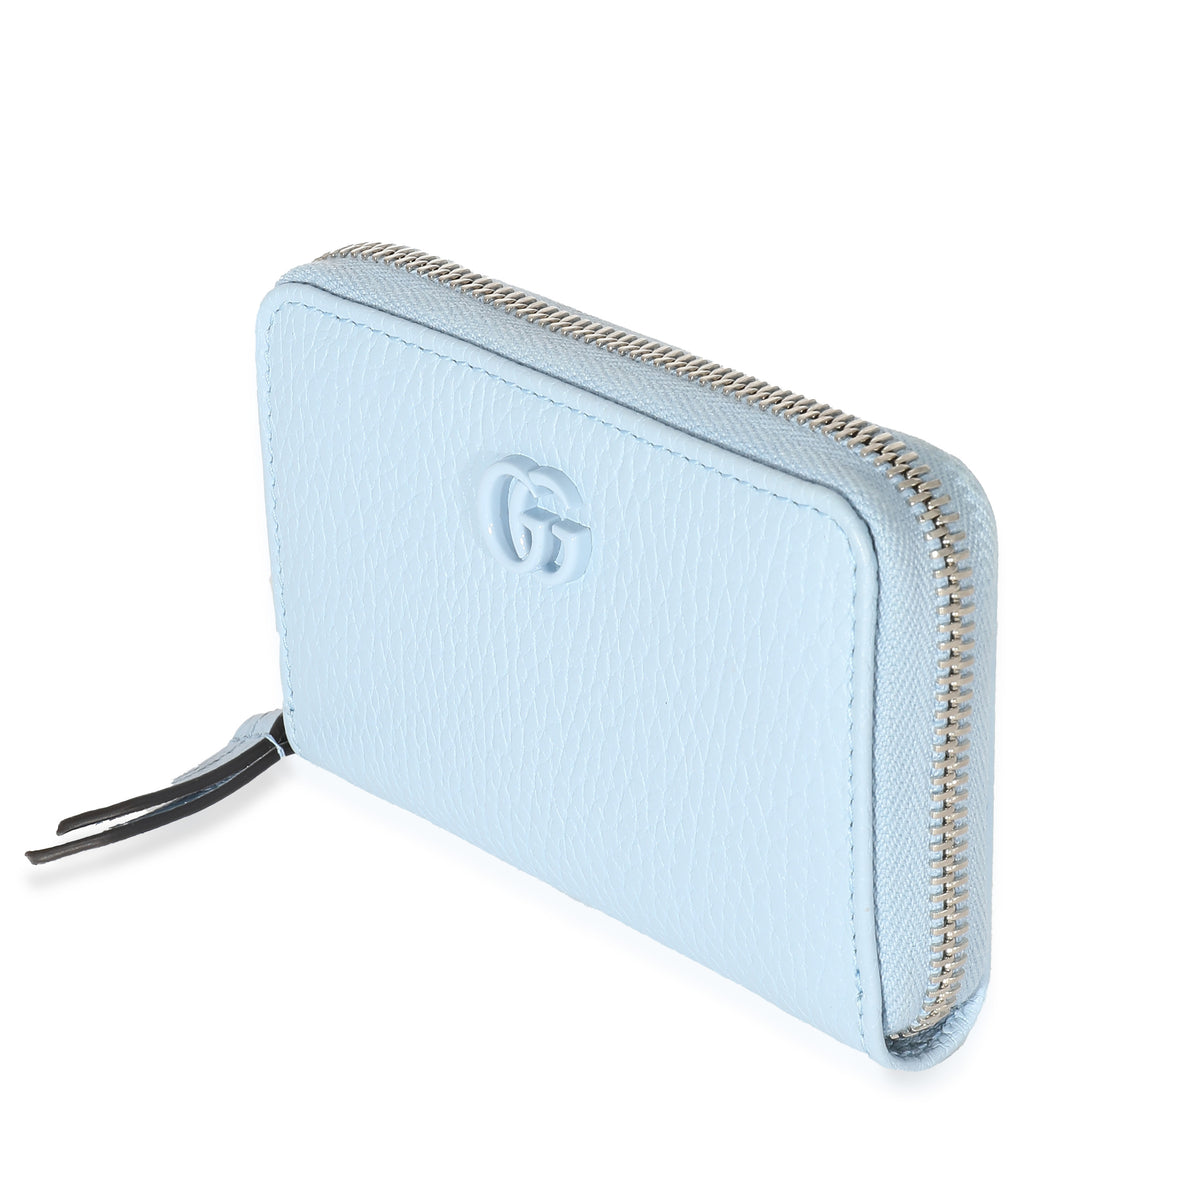 Gucci Blue Calfskin Monochrome Dollar GG Marmont Zip Around Card Holder